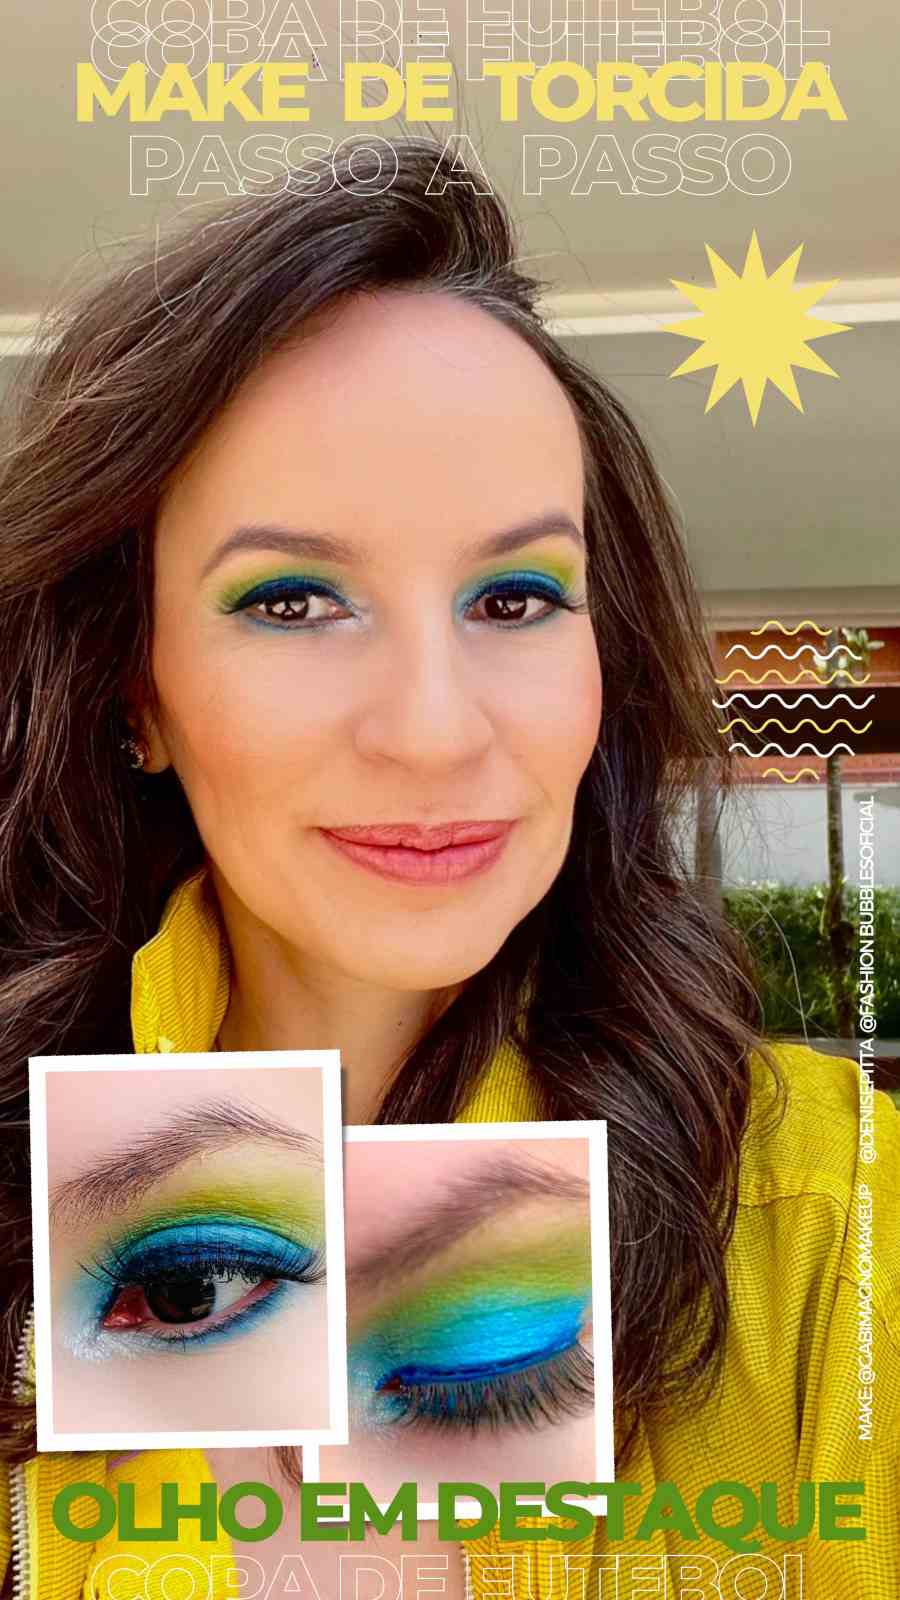 Foto de Denise Pitta maquiada com maquiagem Brazilcore e fotos em destaque no canto de seus olhos.